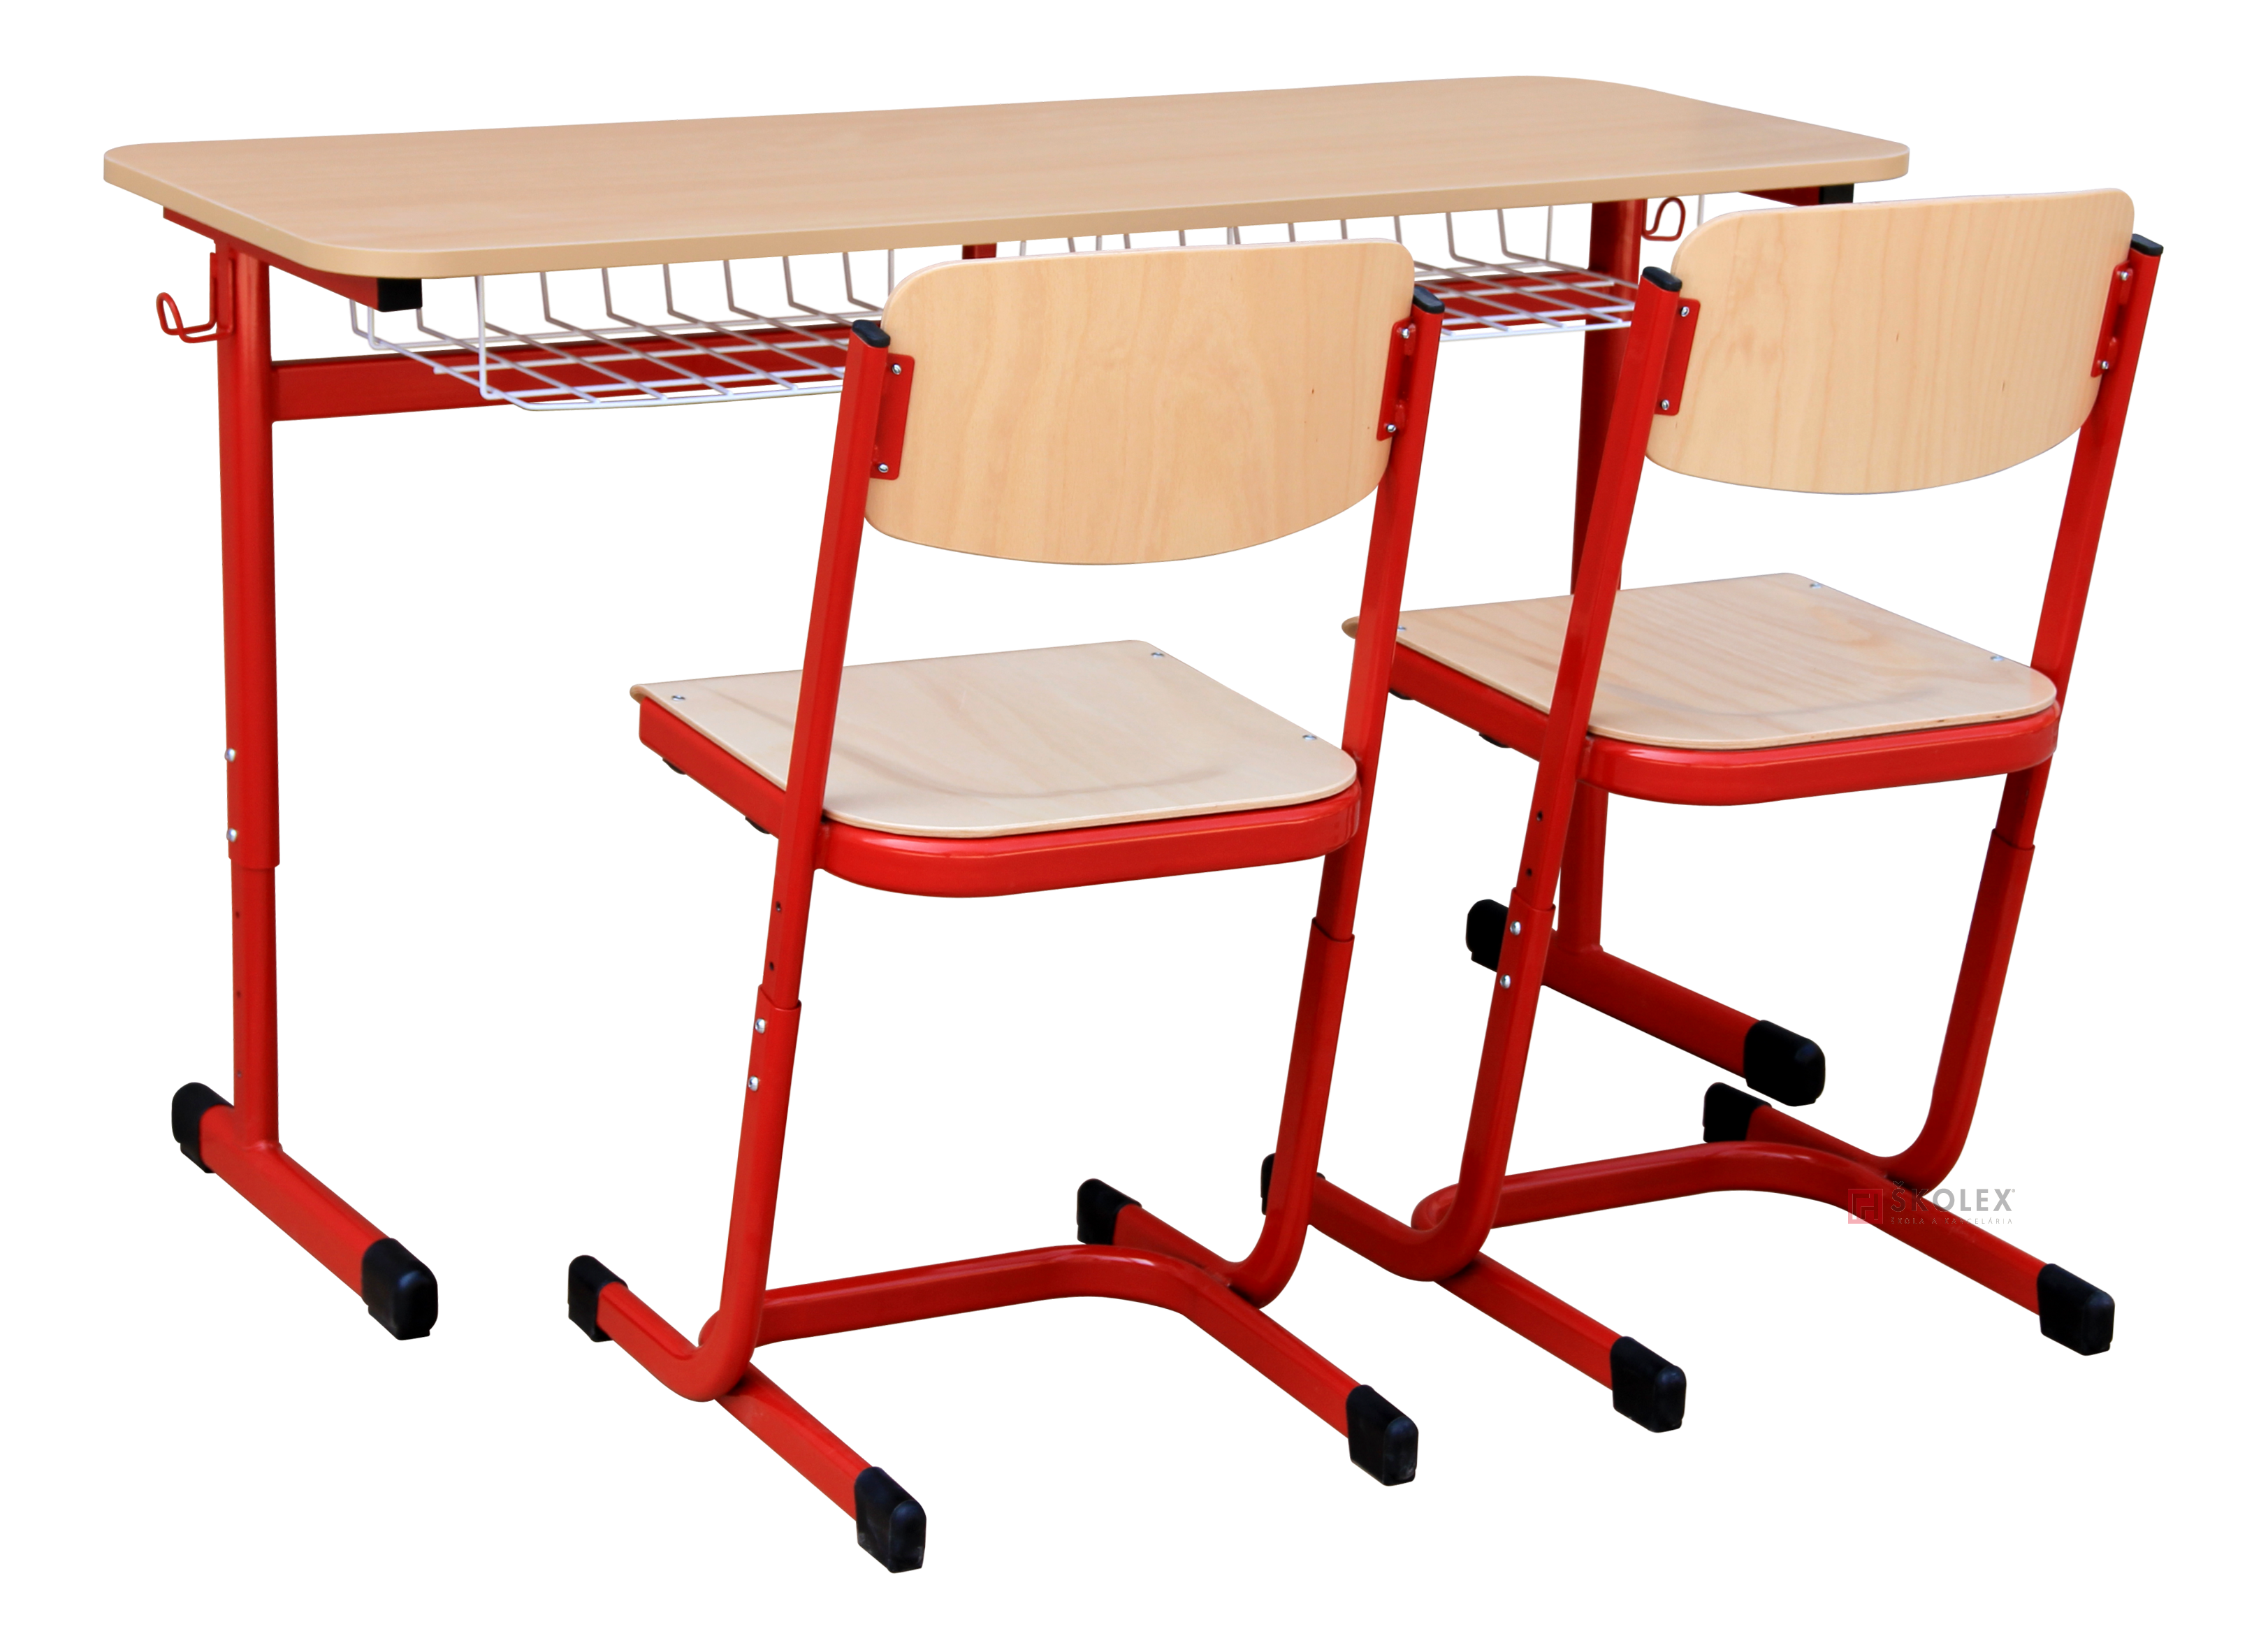 Предусмотрено для школьной мебели. Ученическая мебель. Школьная мебель для детей инвалидов. Школьная мебель высокого качества-. Финская Школьная мебель.